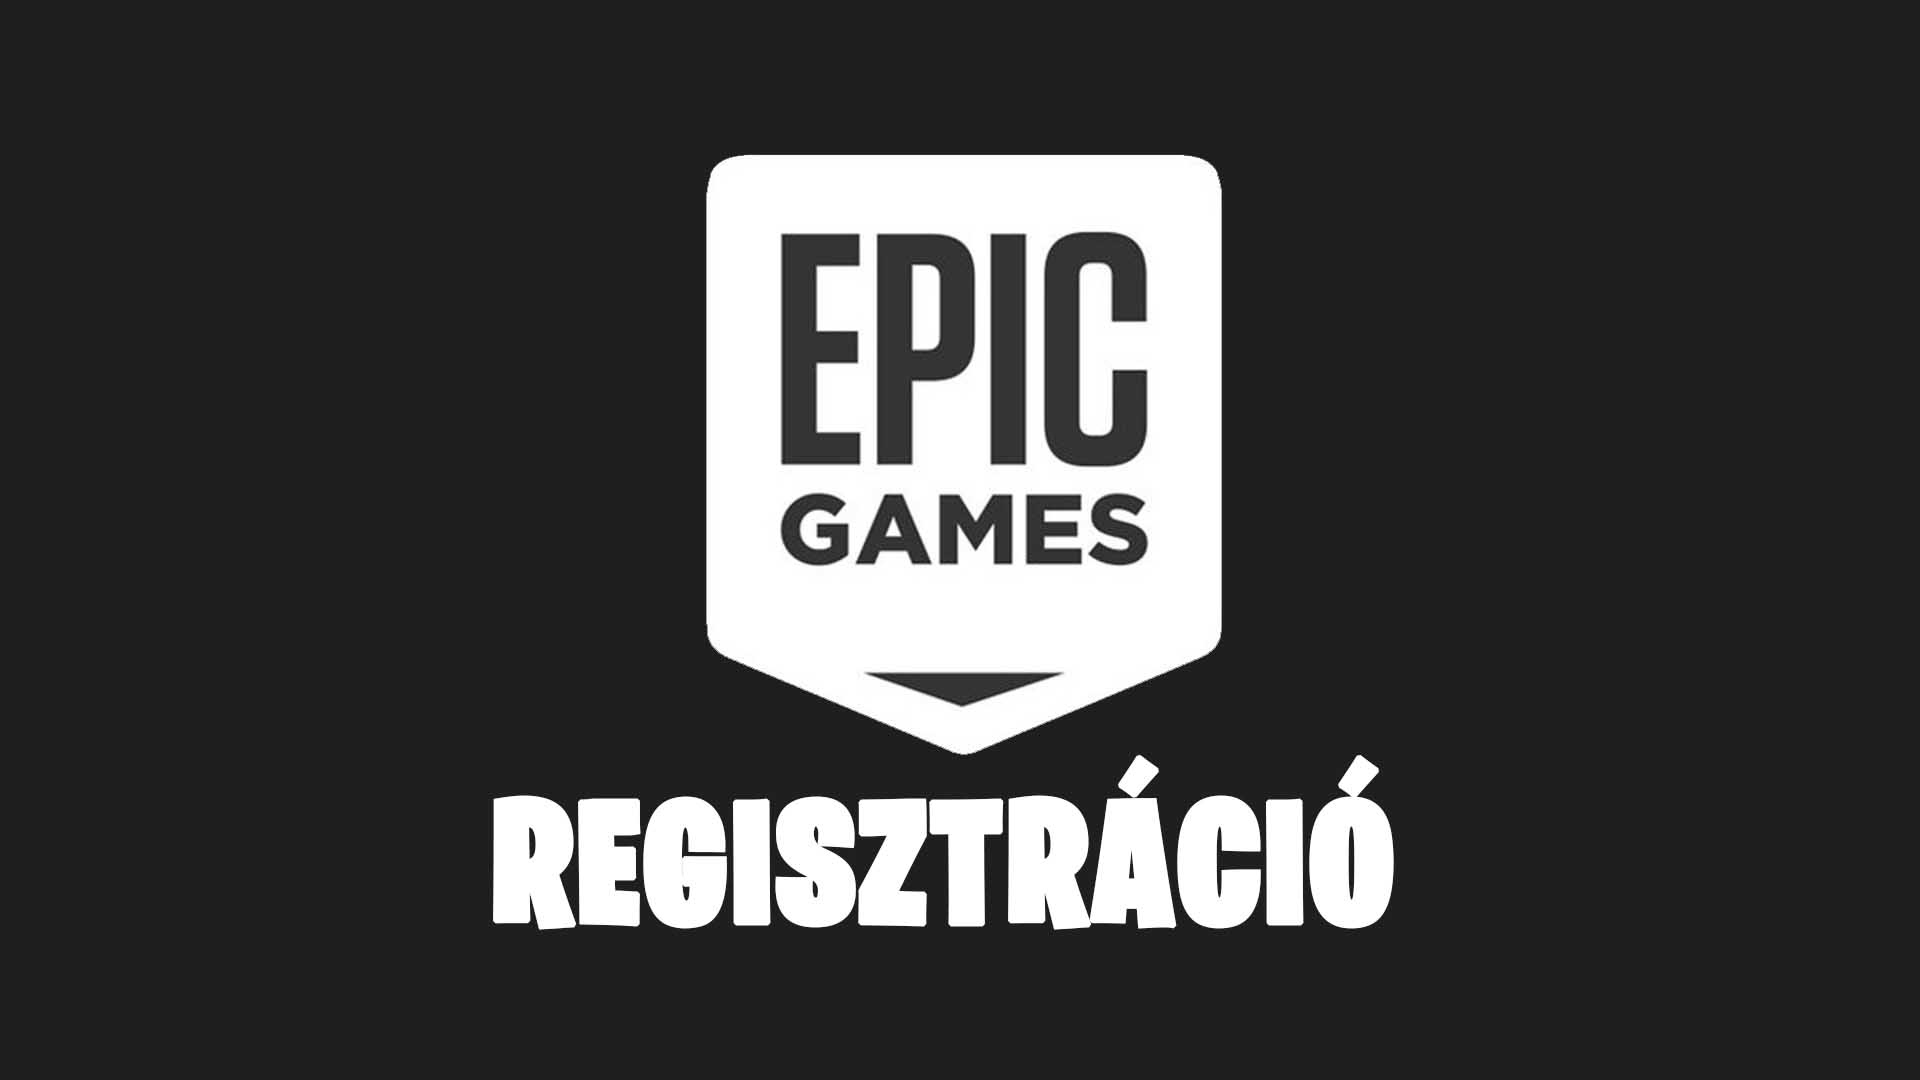 [Epic Games regisztráció] Epic Games regisztráció lépései magyarul – Epic Games magyar nyelvű regisztrációs útmutató